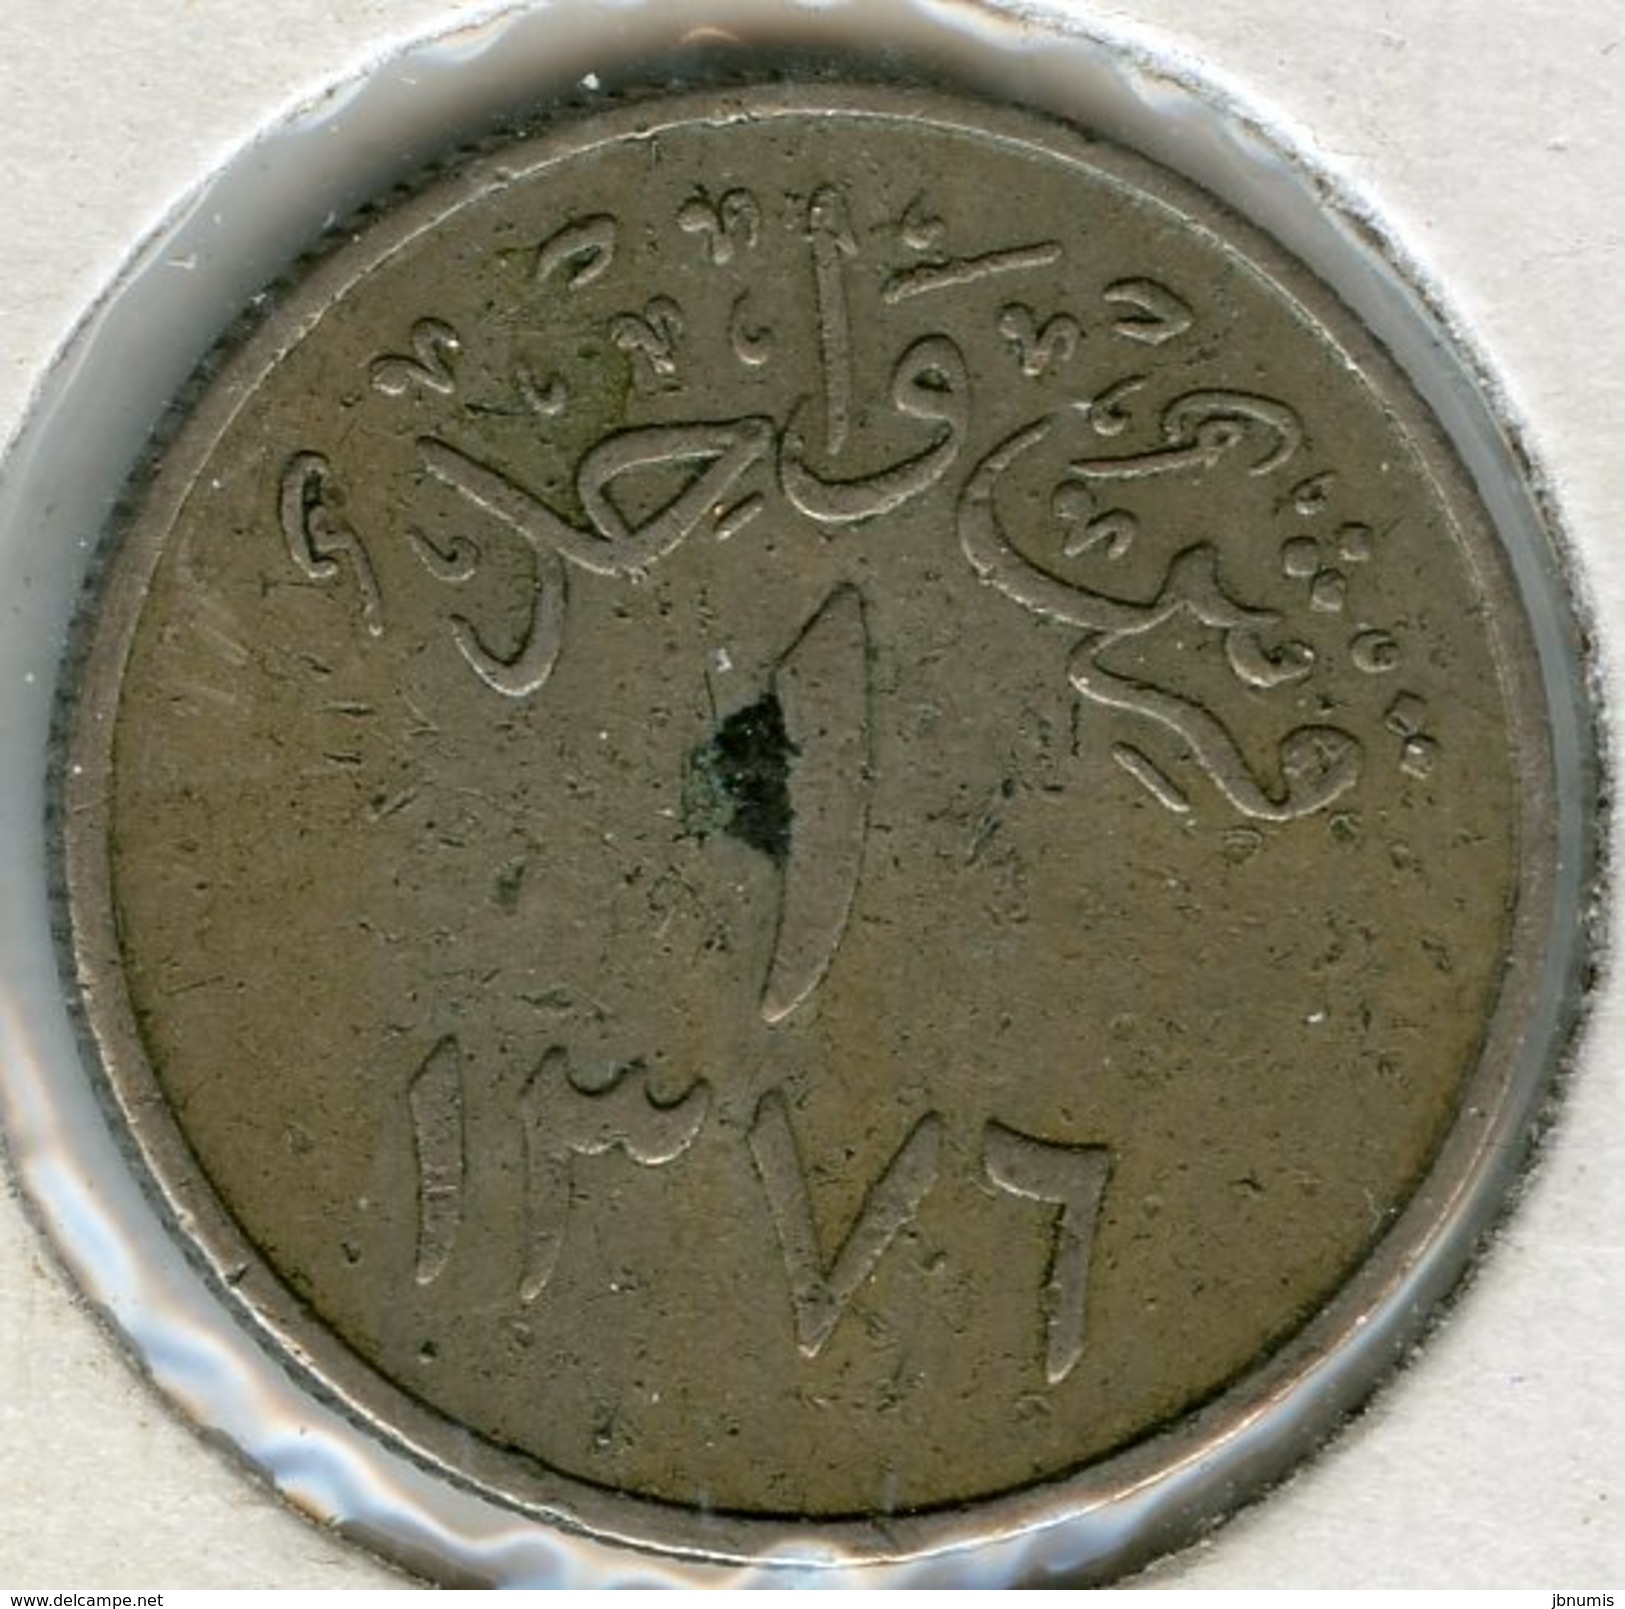 Arabie Saoudite Saudi Arabia 1 Ghirsh 1376 ( 1957 ) KM 40 - Arabie Saoudite